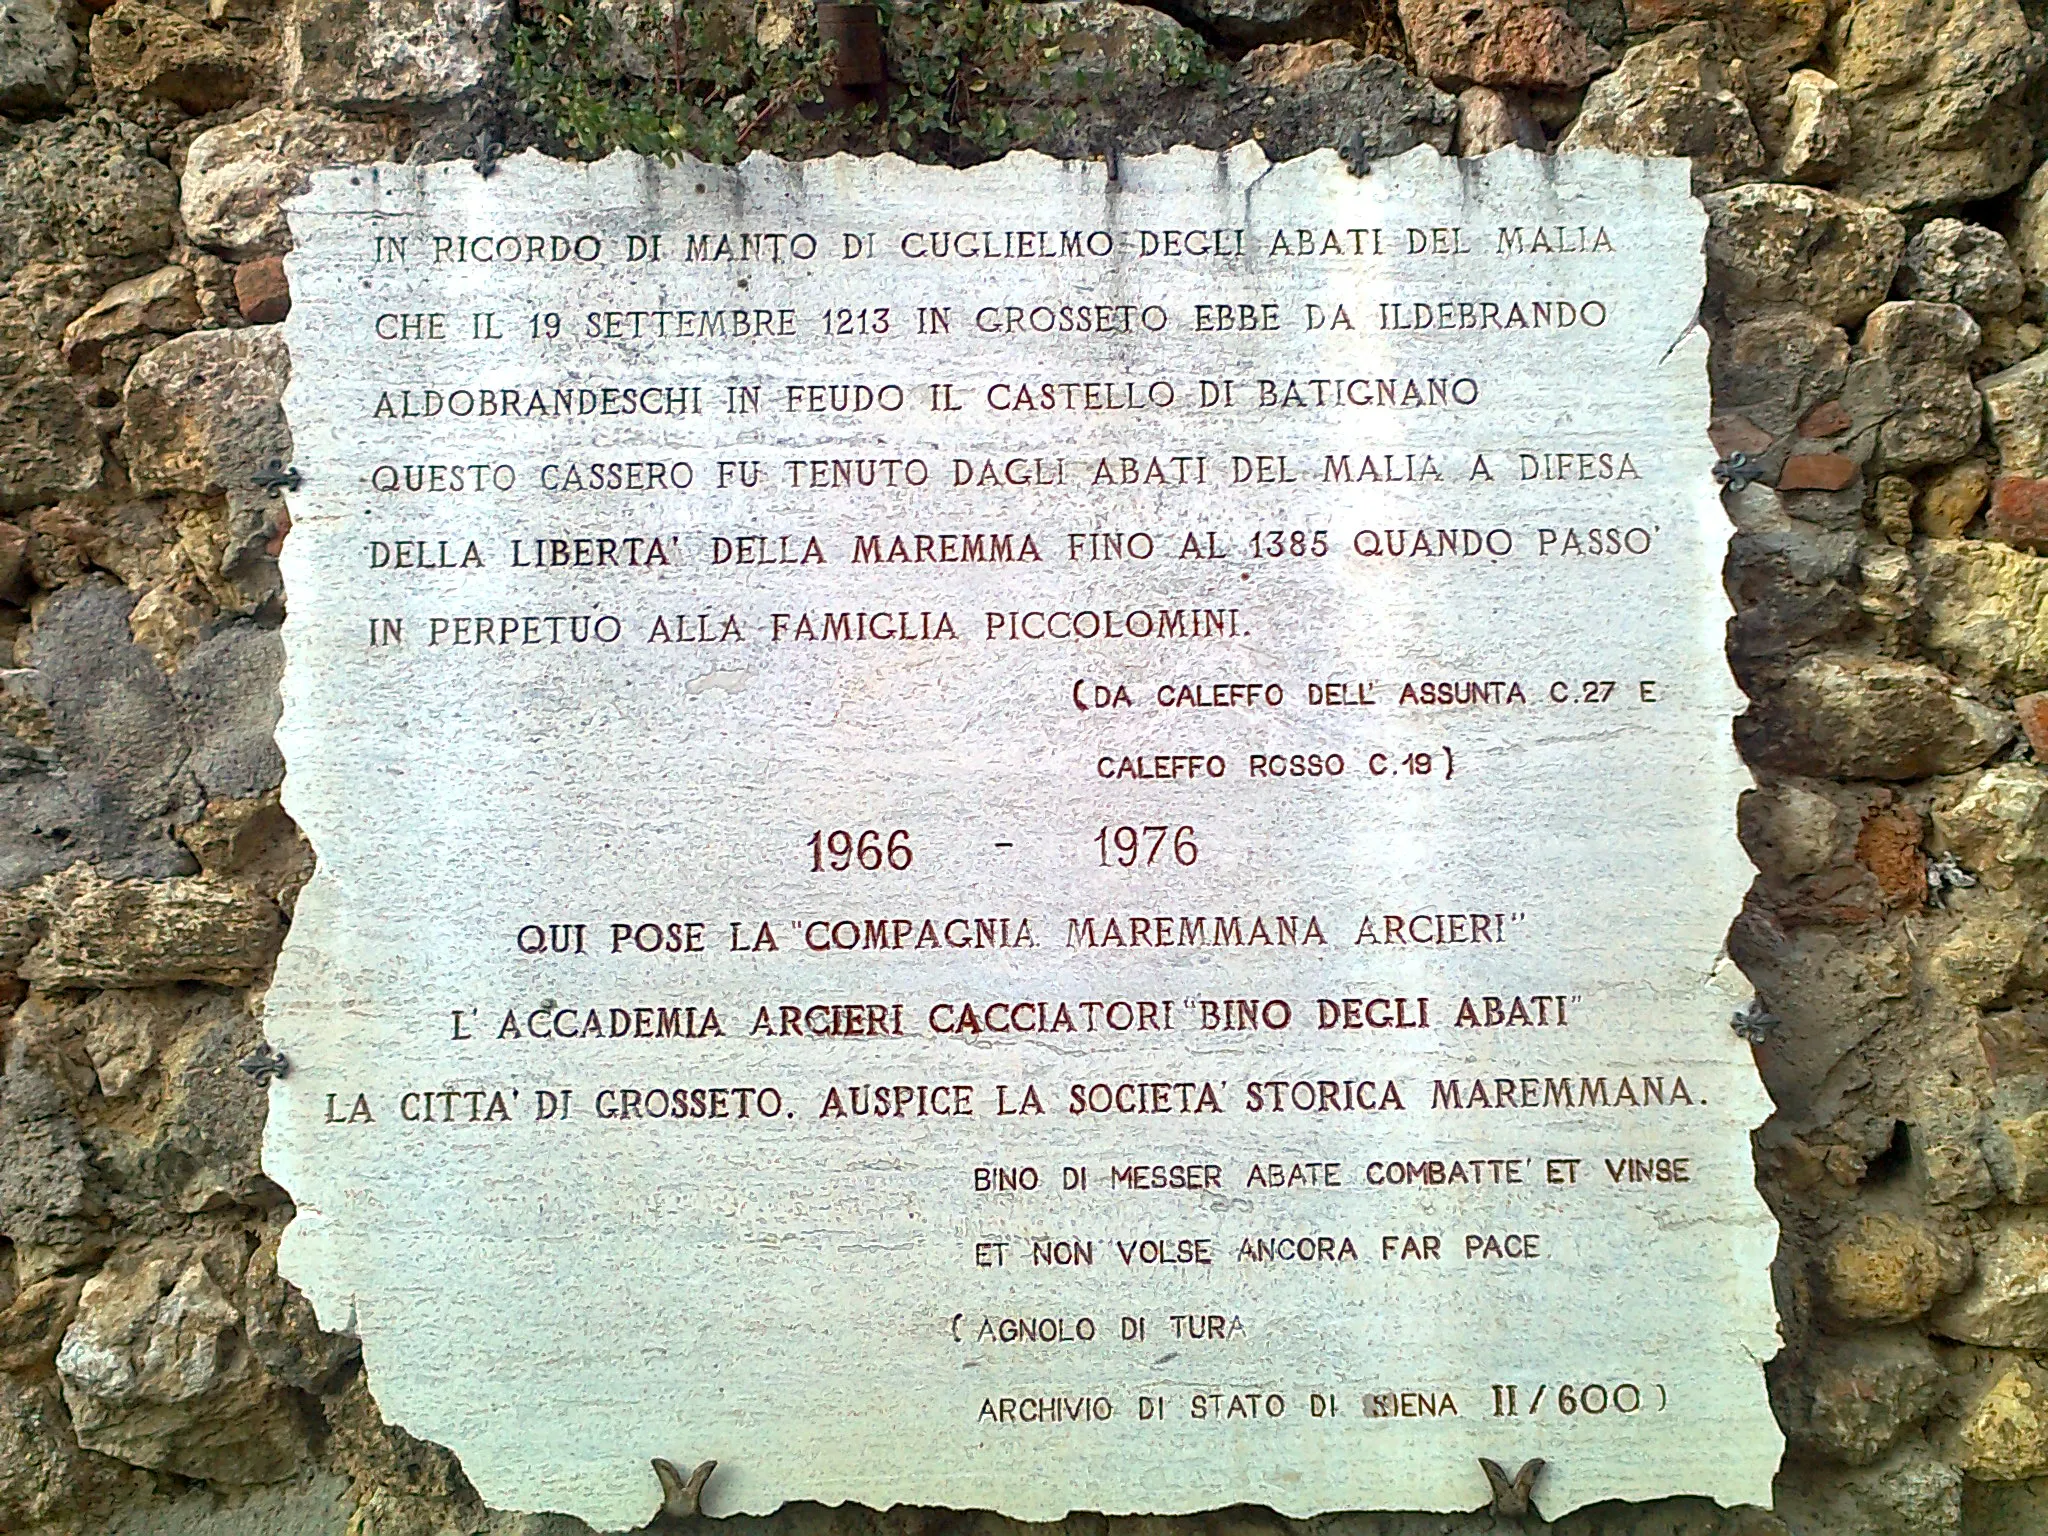 Photo showing: Lapide in memoria di Manto di Guglielmo degli Abati del Malia, in via dell'Orologio a Batignano (GR)